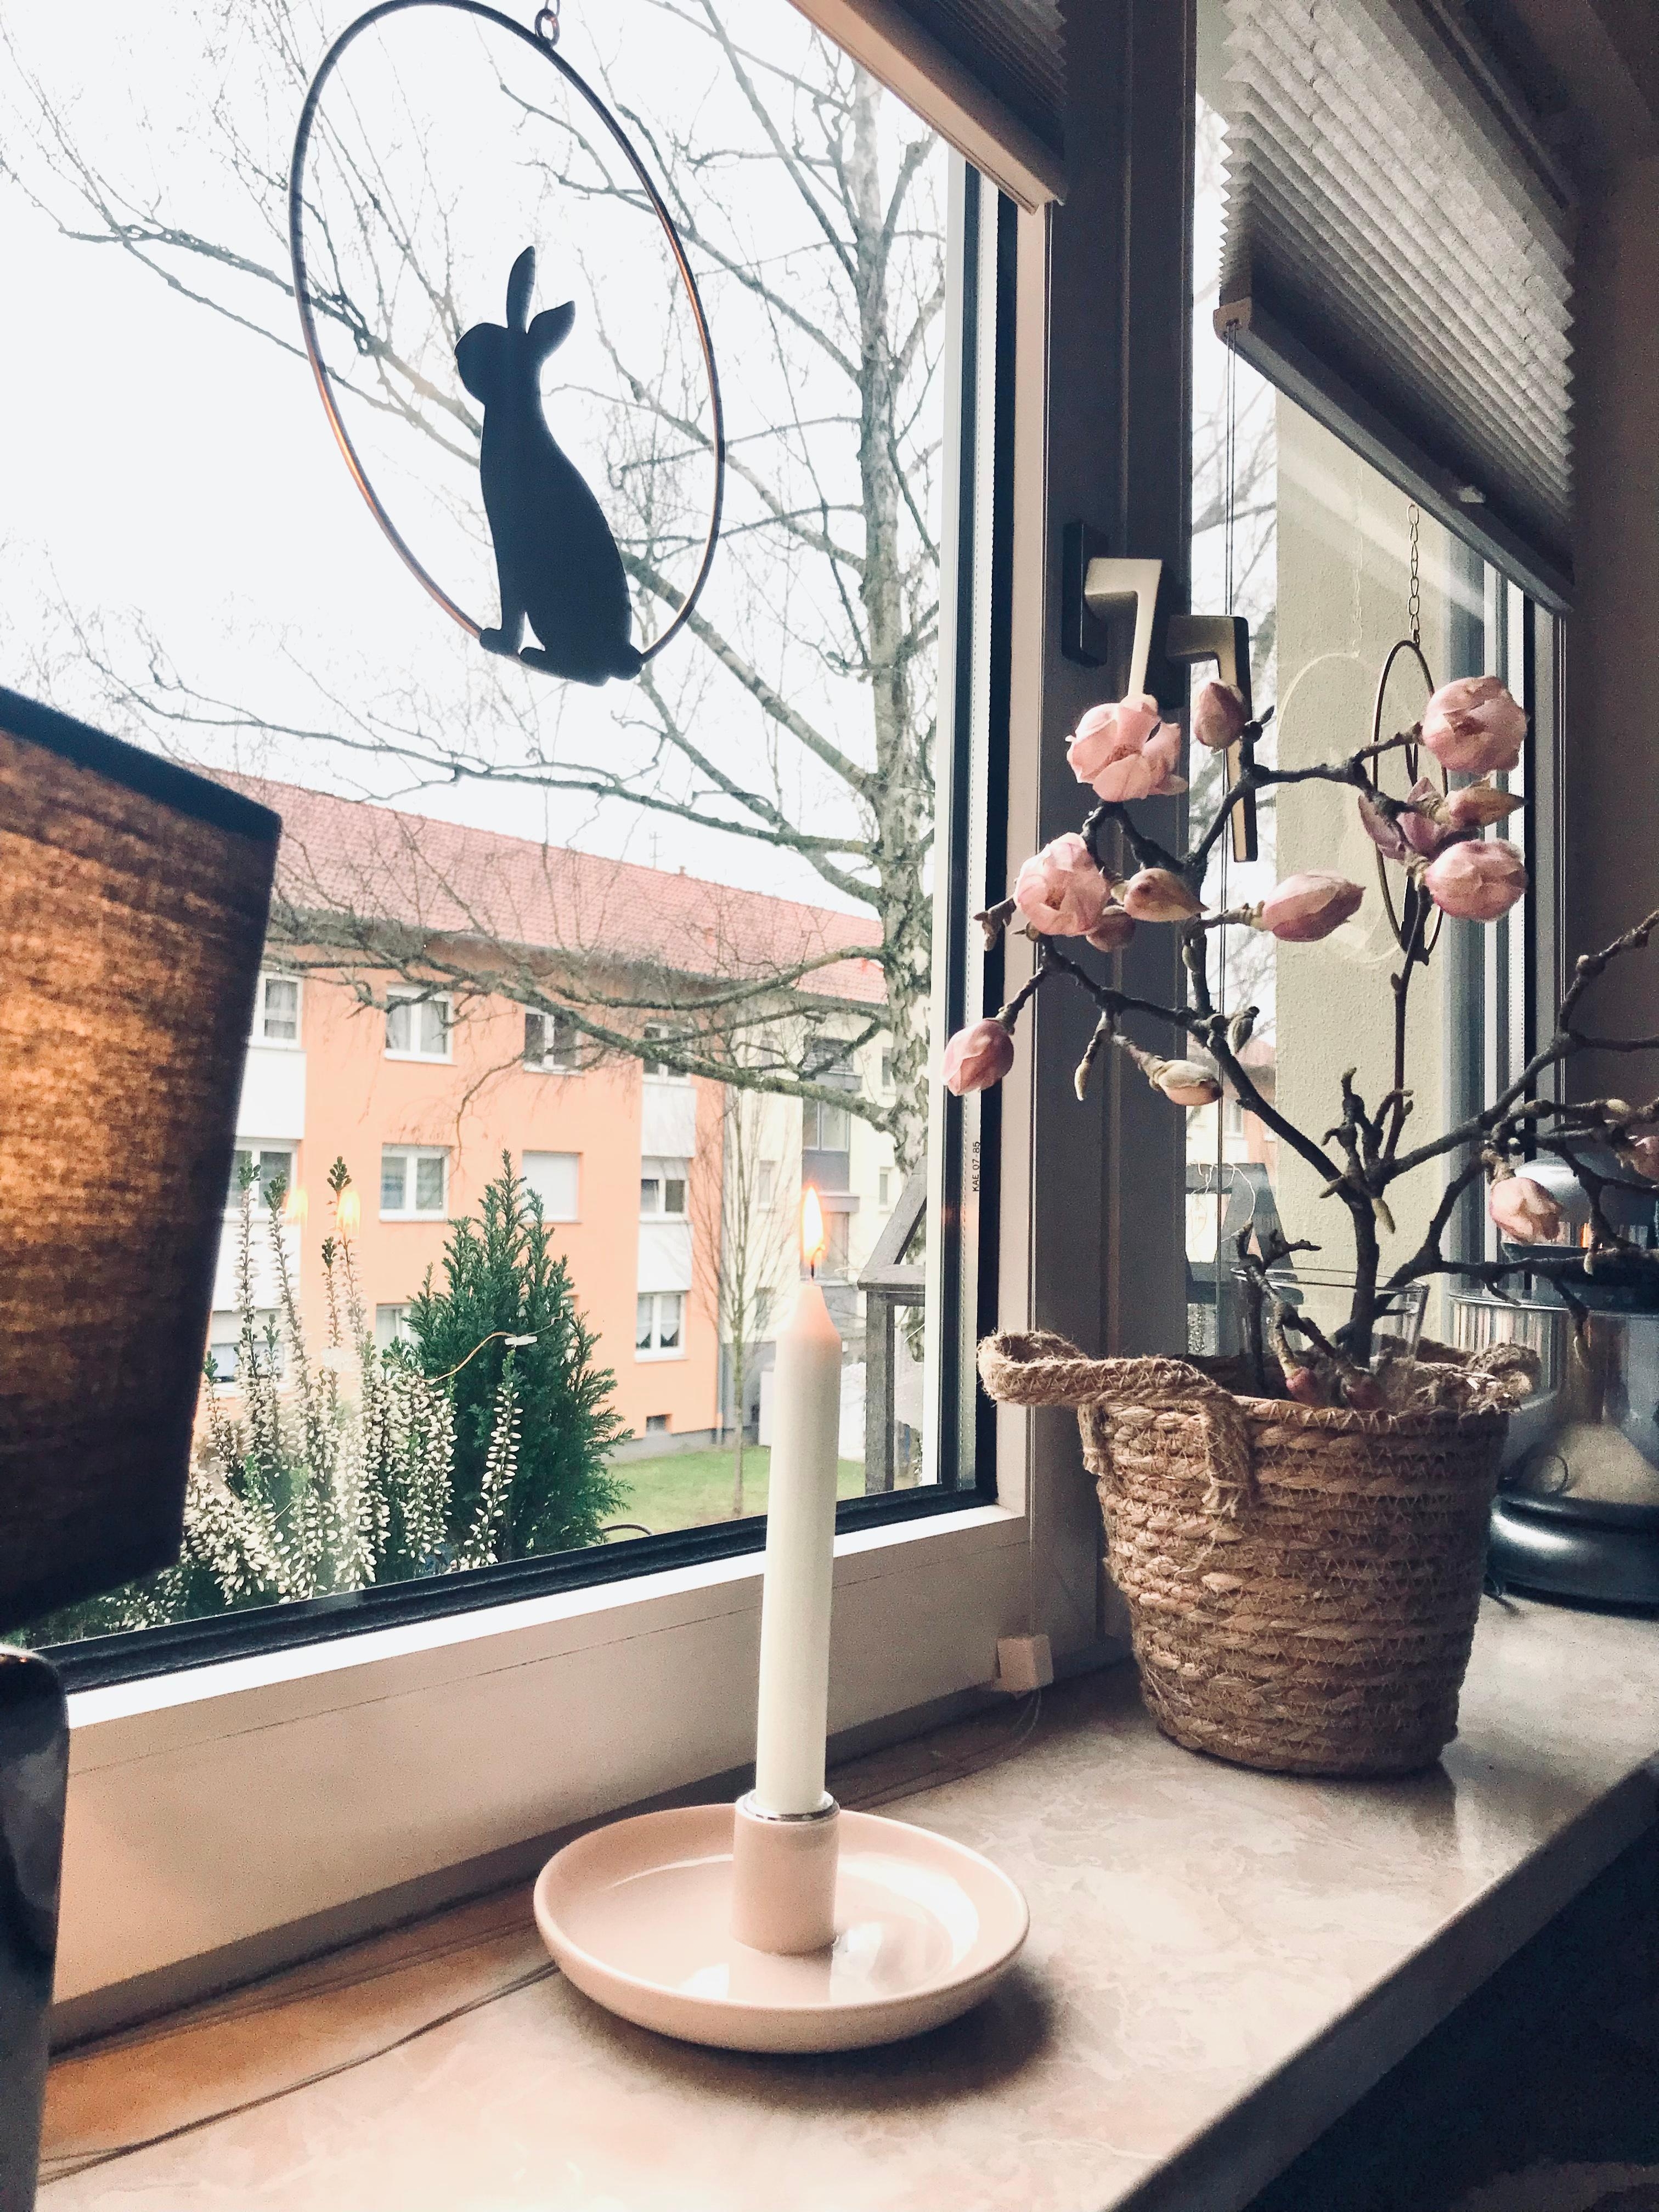 Schlecht Wetter Zeit für Gemütlichkeit🕯 
#magnolie #zweig #fensterdeko #home #living #cozy #hase #tischlampe 